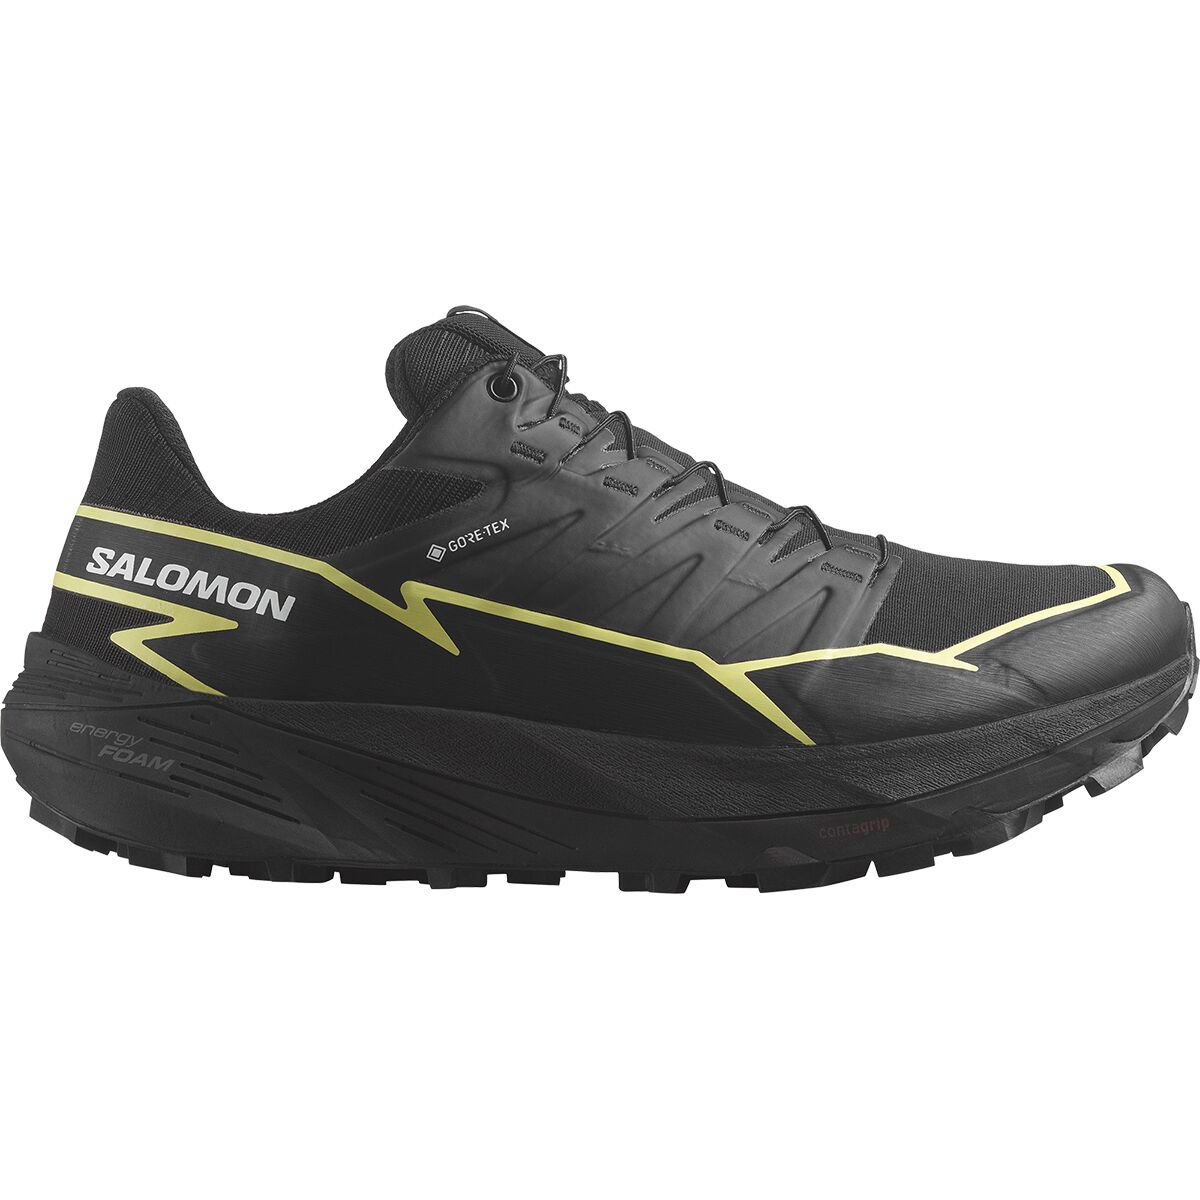 Salomon Thundercross GORE-TEX Trail Running Shoe - Women's Black/Black/Charlock, US 10.0/UK 8.5